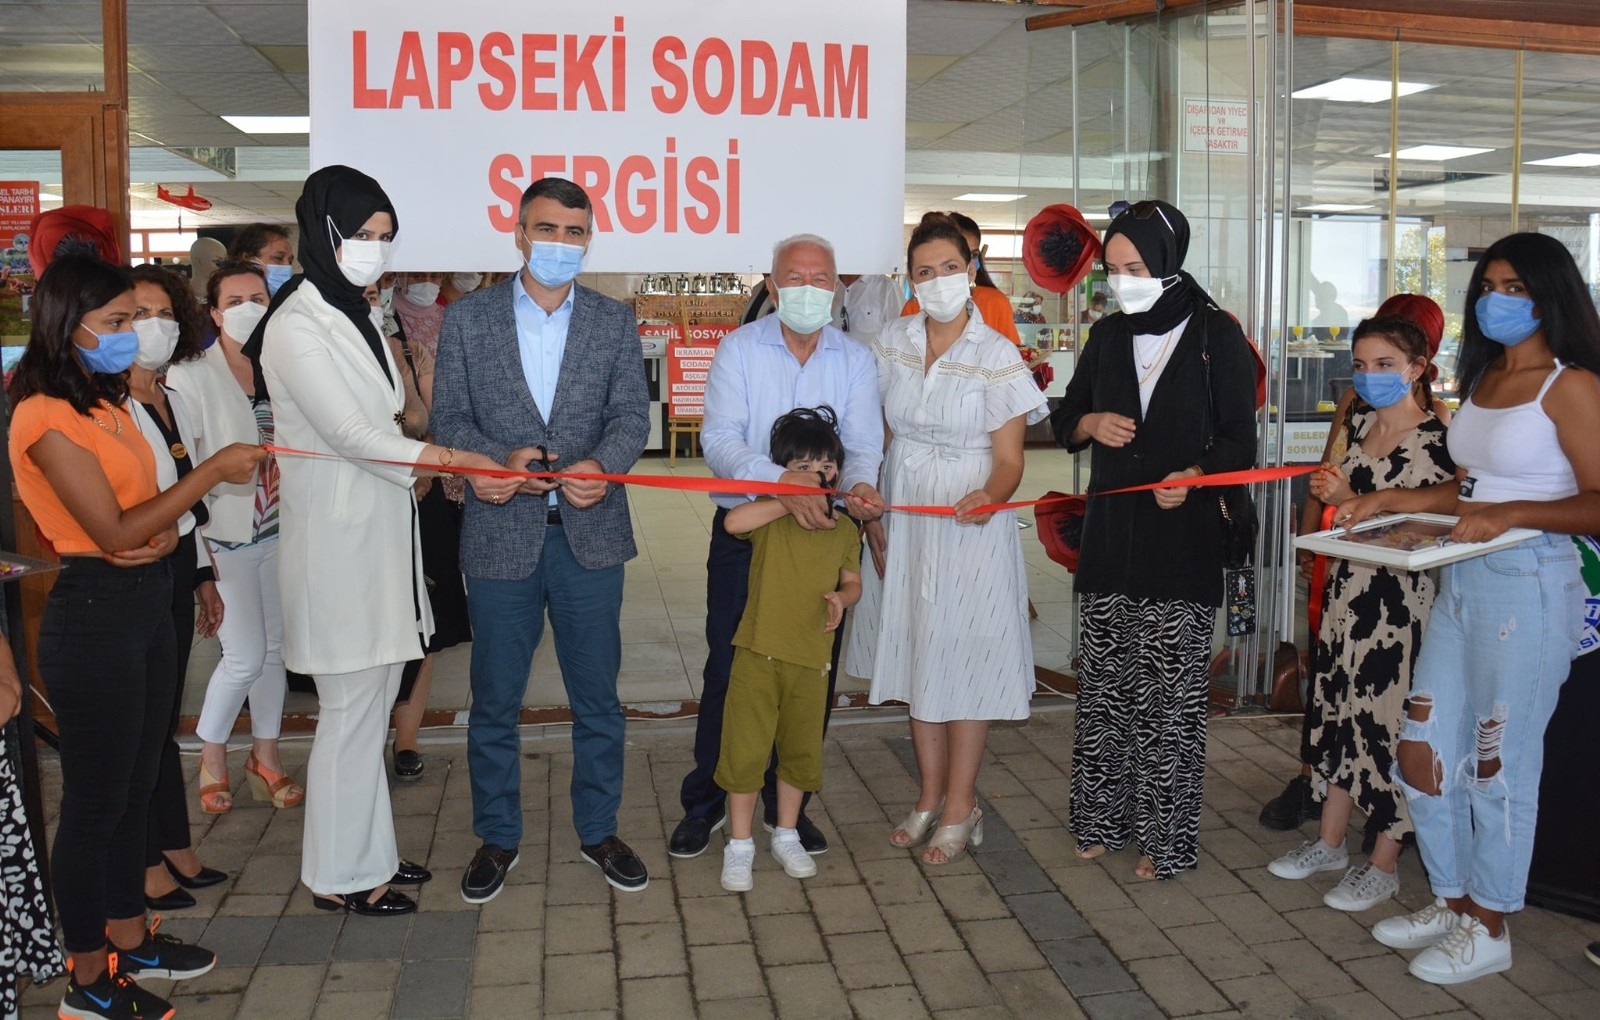 Lapseki’de SODAM sergisi açıldı